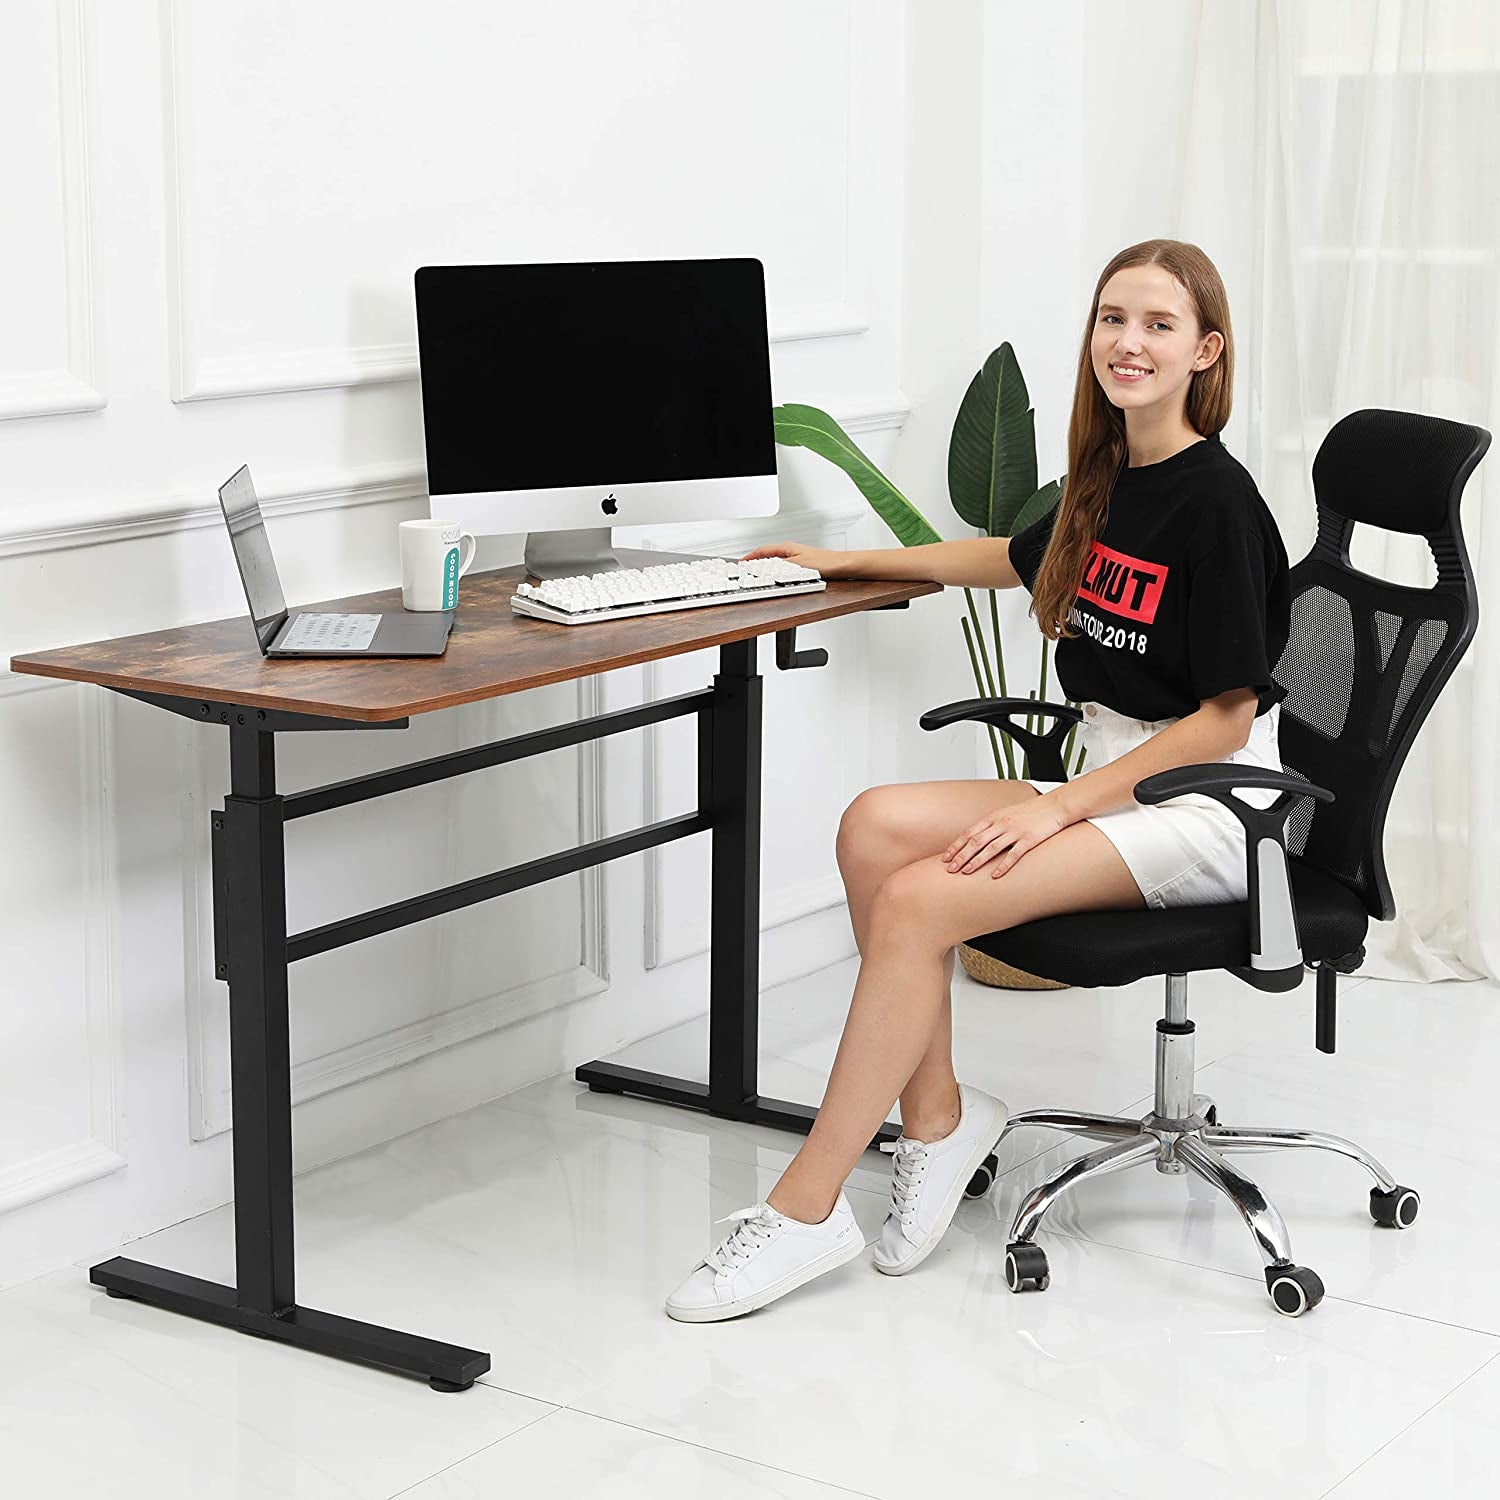 Crank Adjustable Height Standing Desk - Sit to Stand up Desk, Home Office Desk Computer Workstation, Black Frame/Antique Top